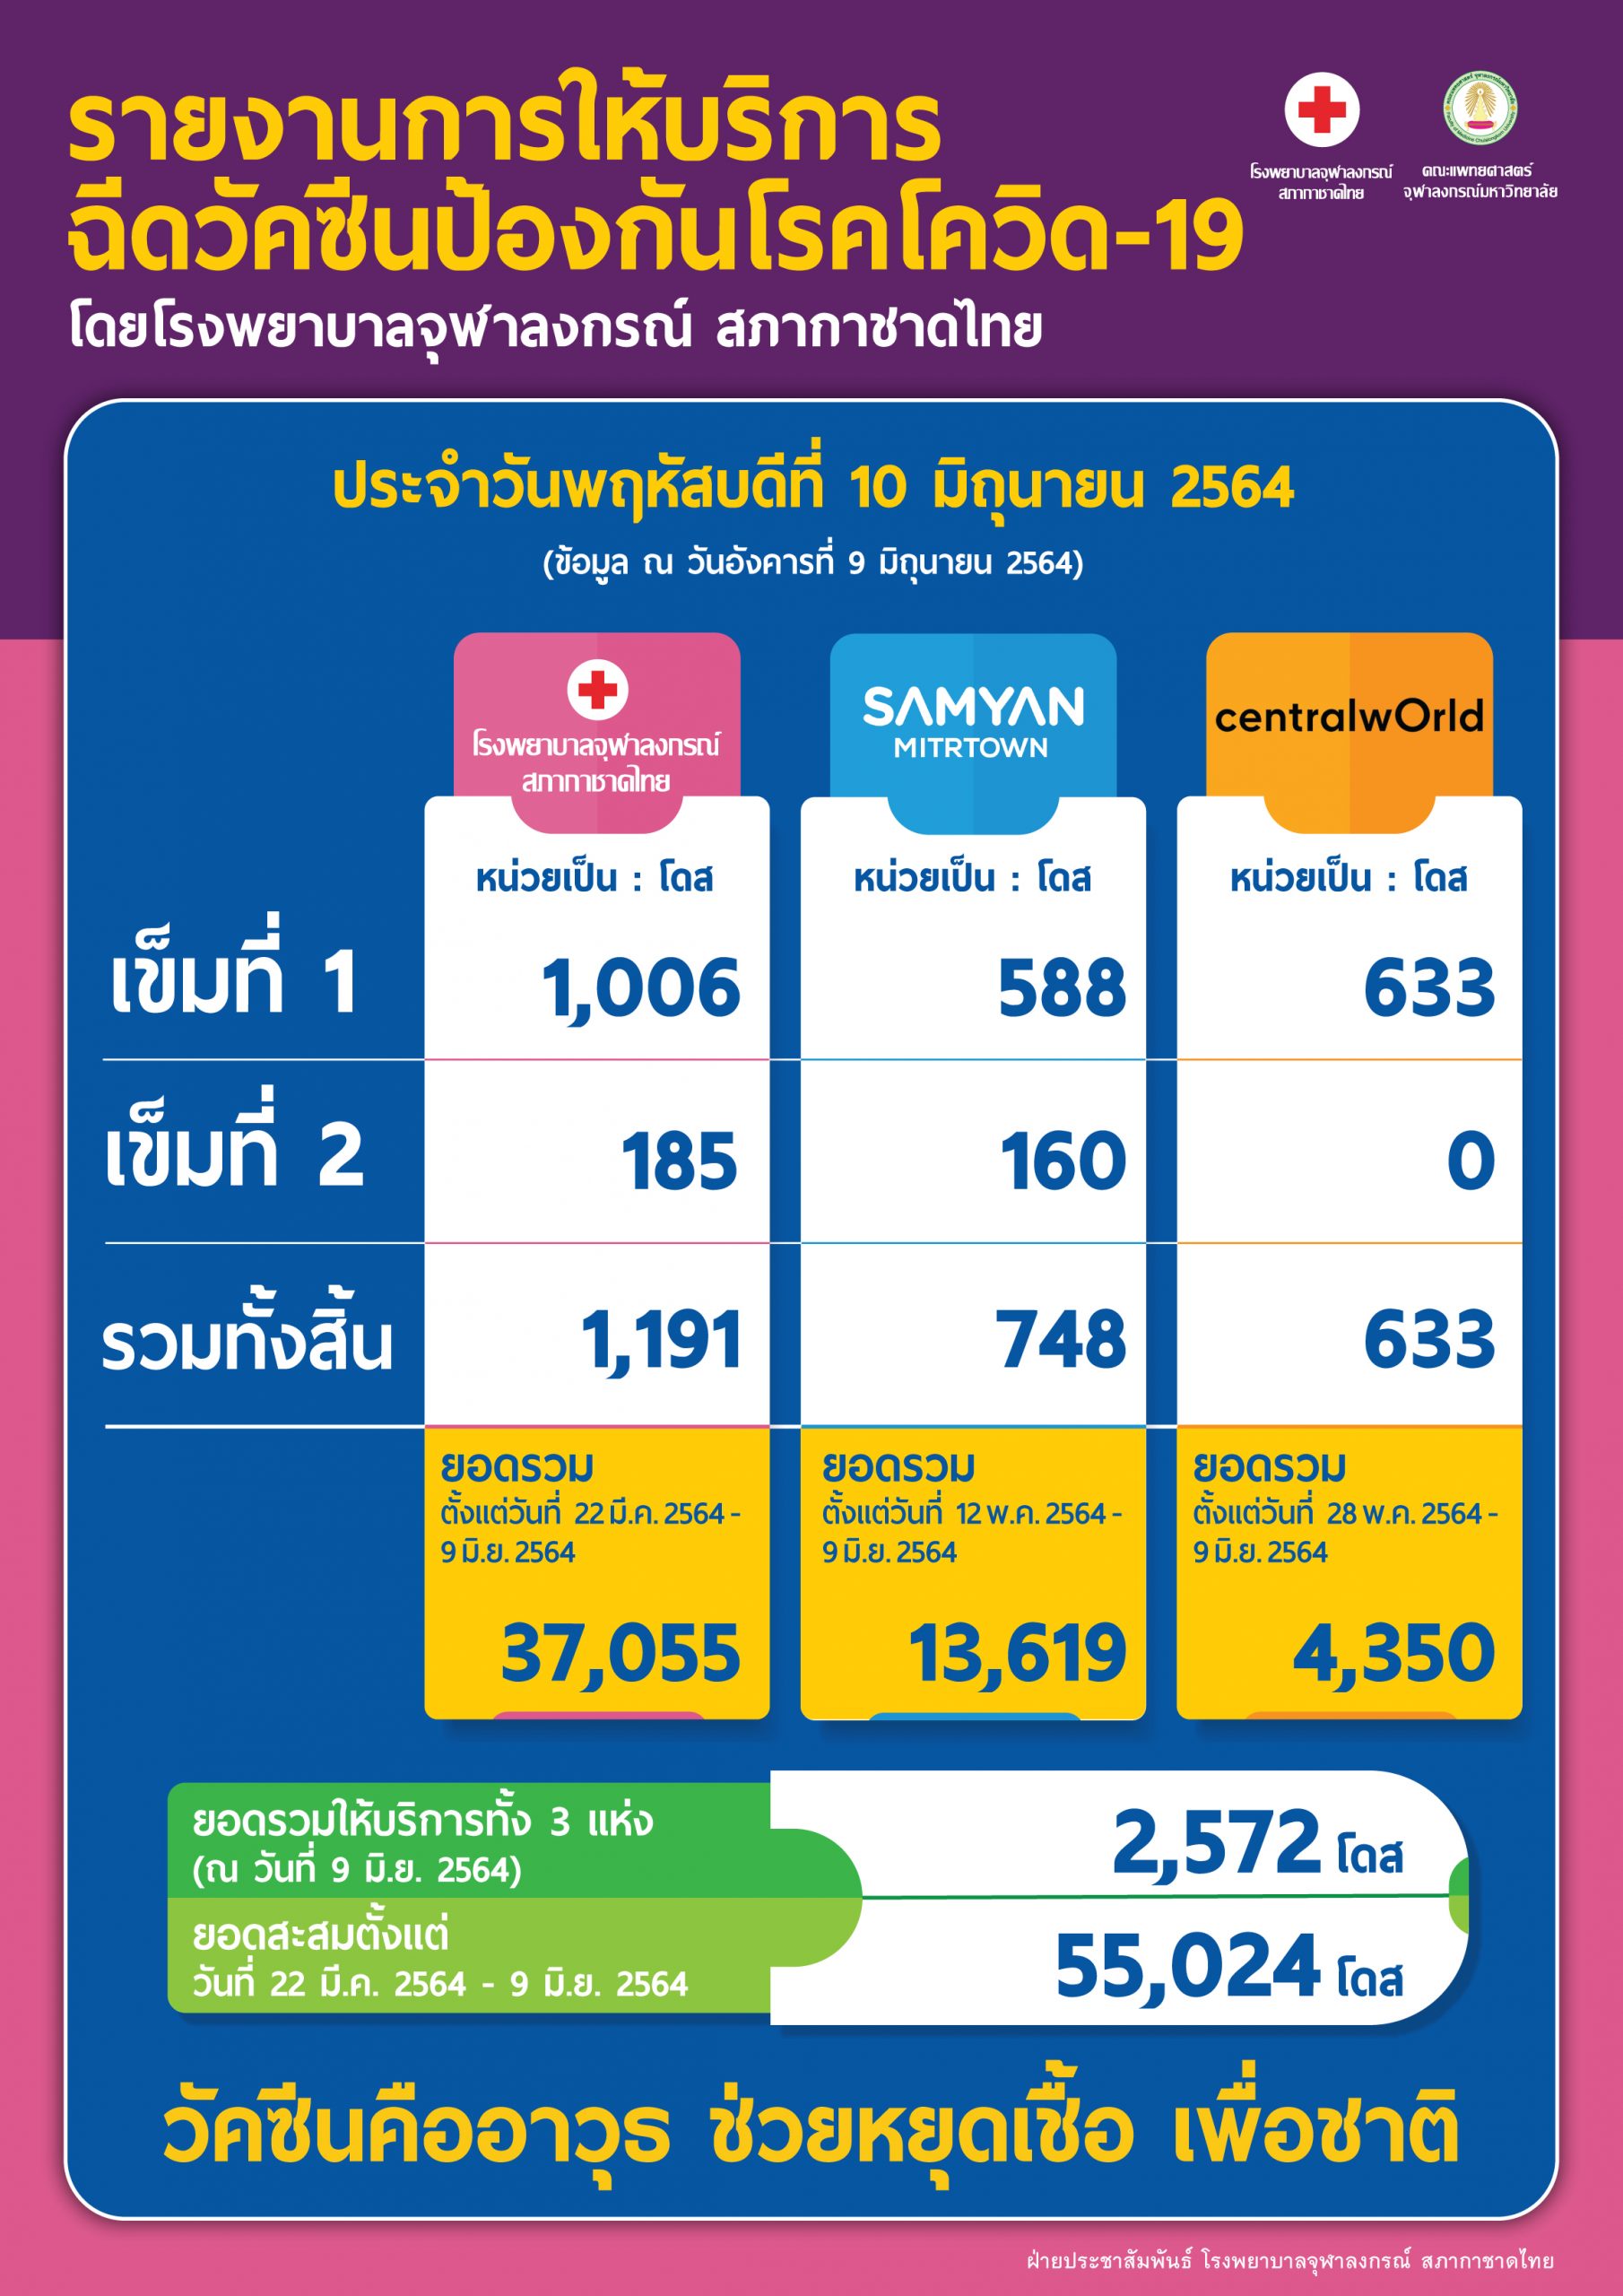 รายงานการให้บริการฉีดวัคซีนป้องกันโรคโควิด-19 โดยโรงพยาบาลจุฬาลงกรณ์ สภากาชาดไทย ประจำวันพฤหัสบดีที่ 10 มิถุนายน 2564